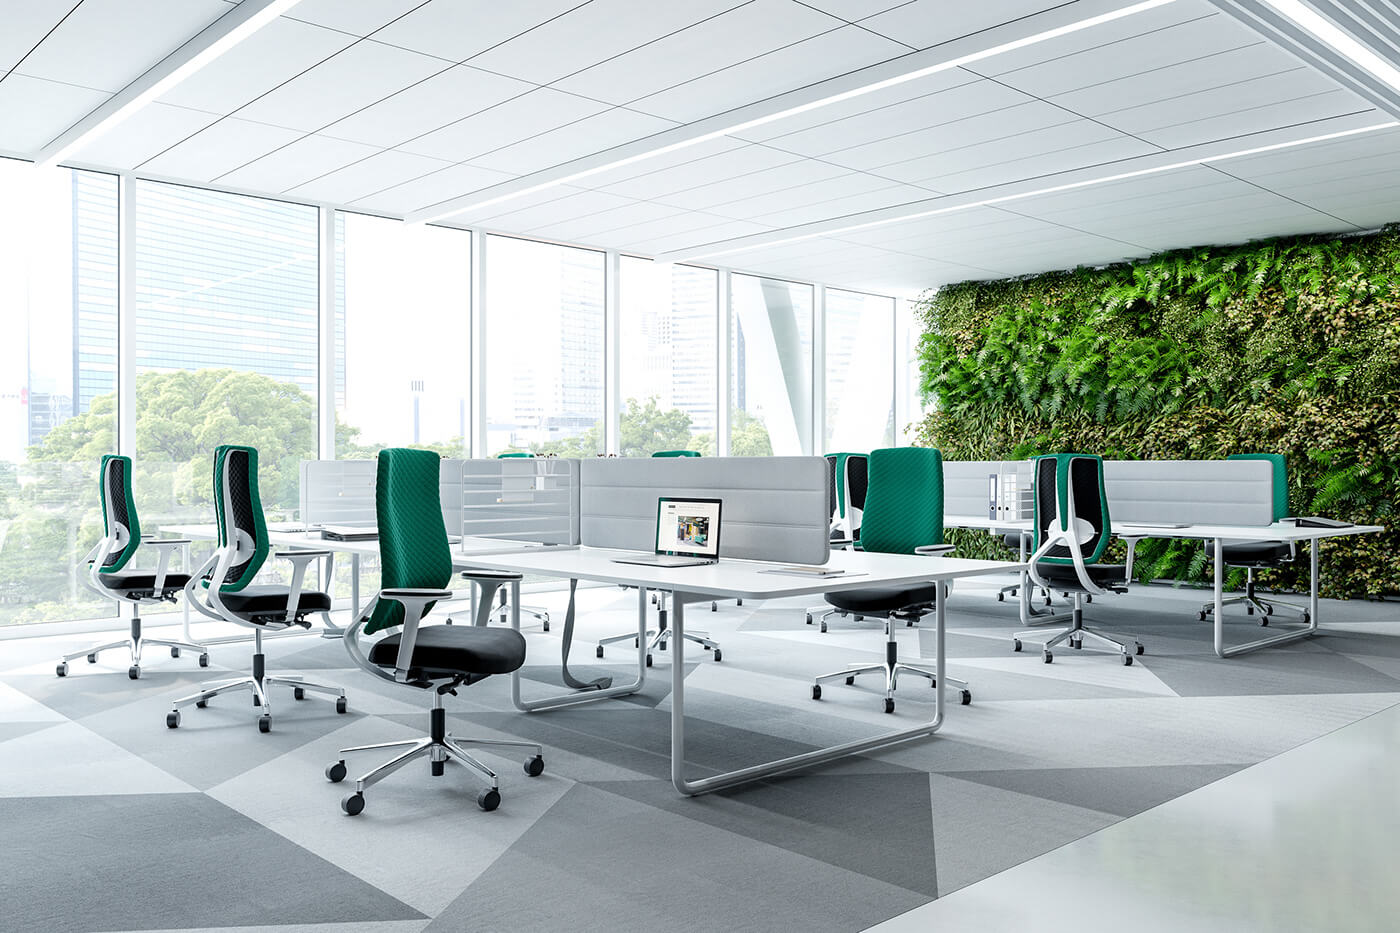 Thiết kế văn phòng xanh được yêu thích và phù hợp với mọi diện tích văn phòng